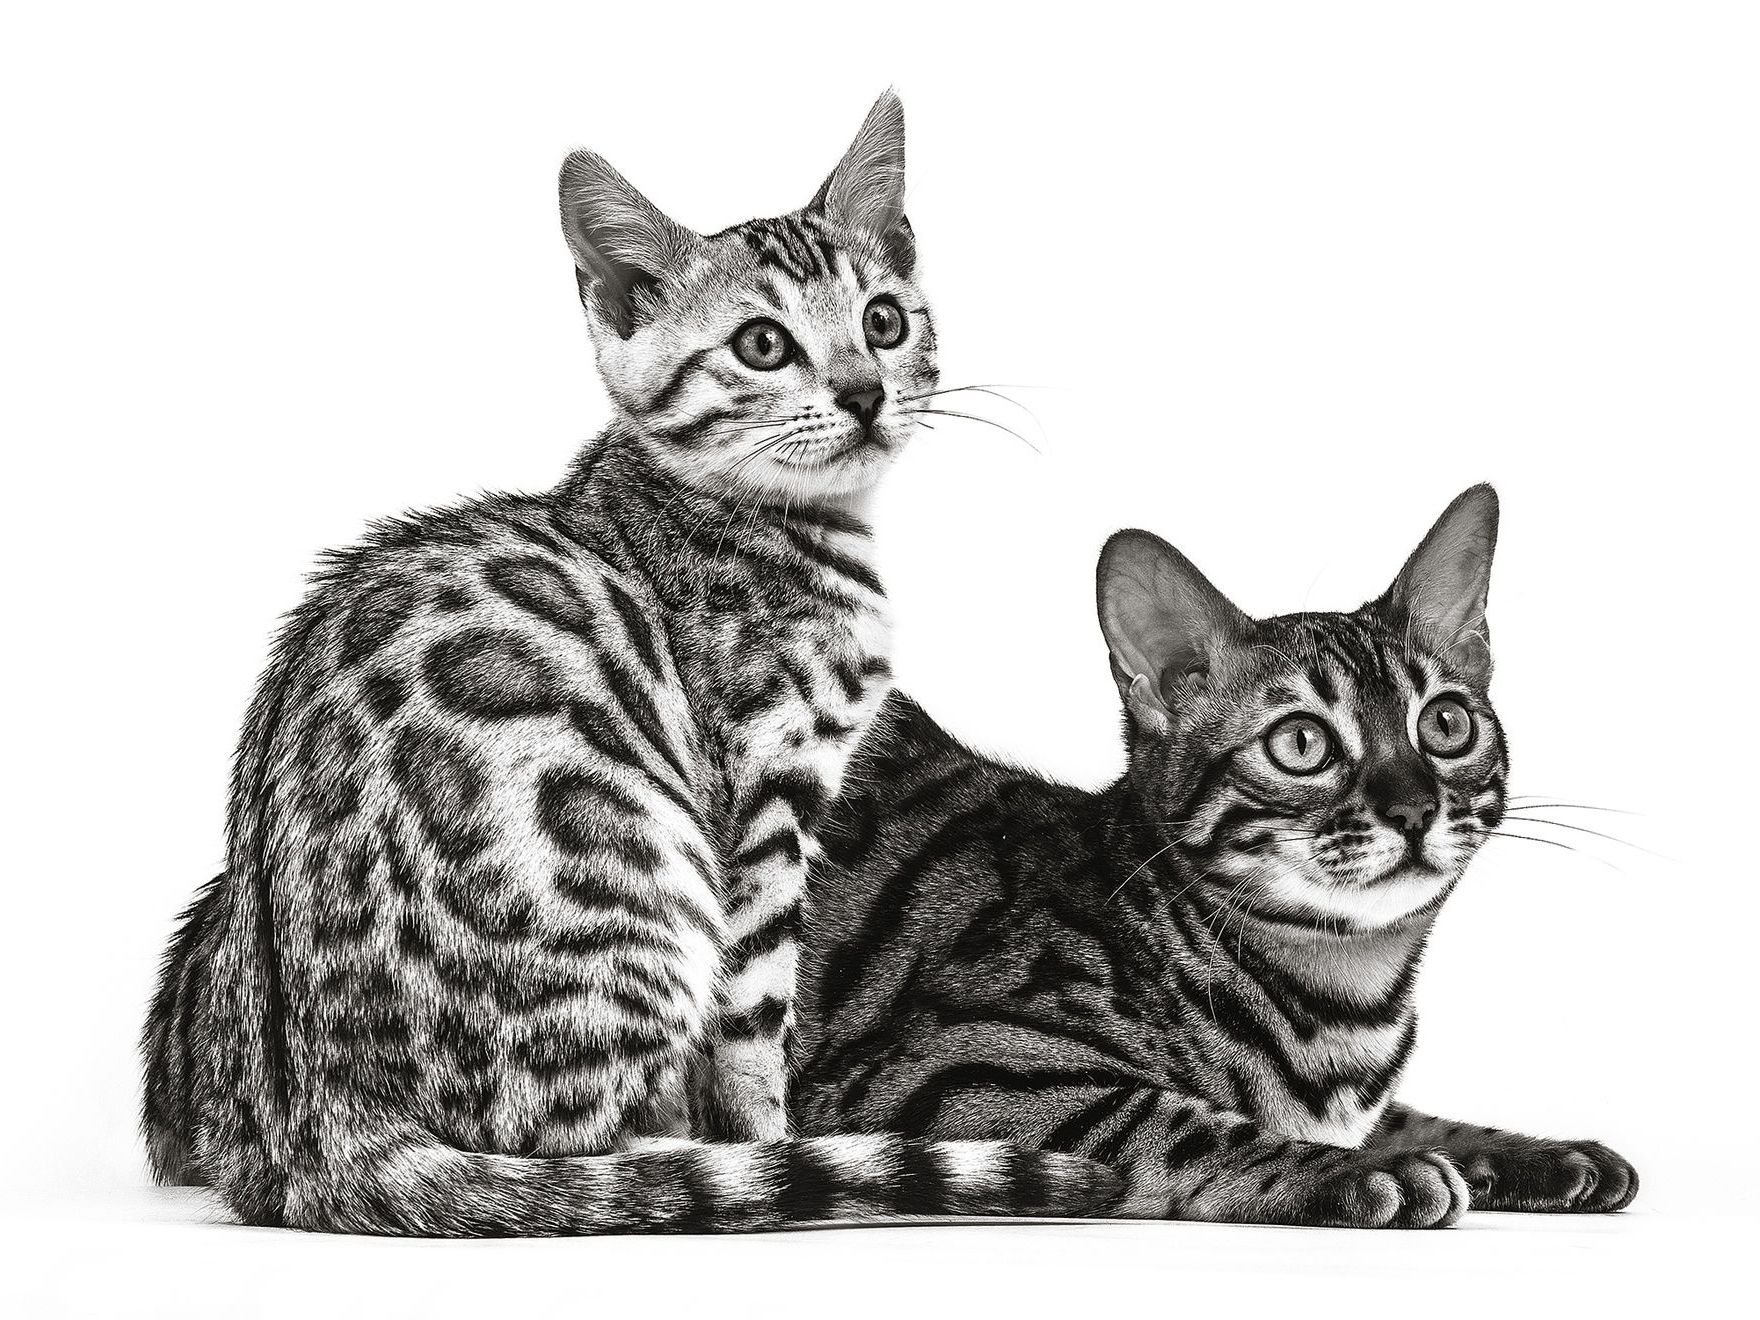 Dos gatos Bengalí, uno sentado y otro acostado, en blanco y negro